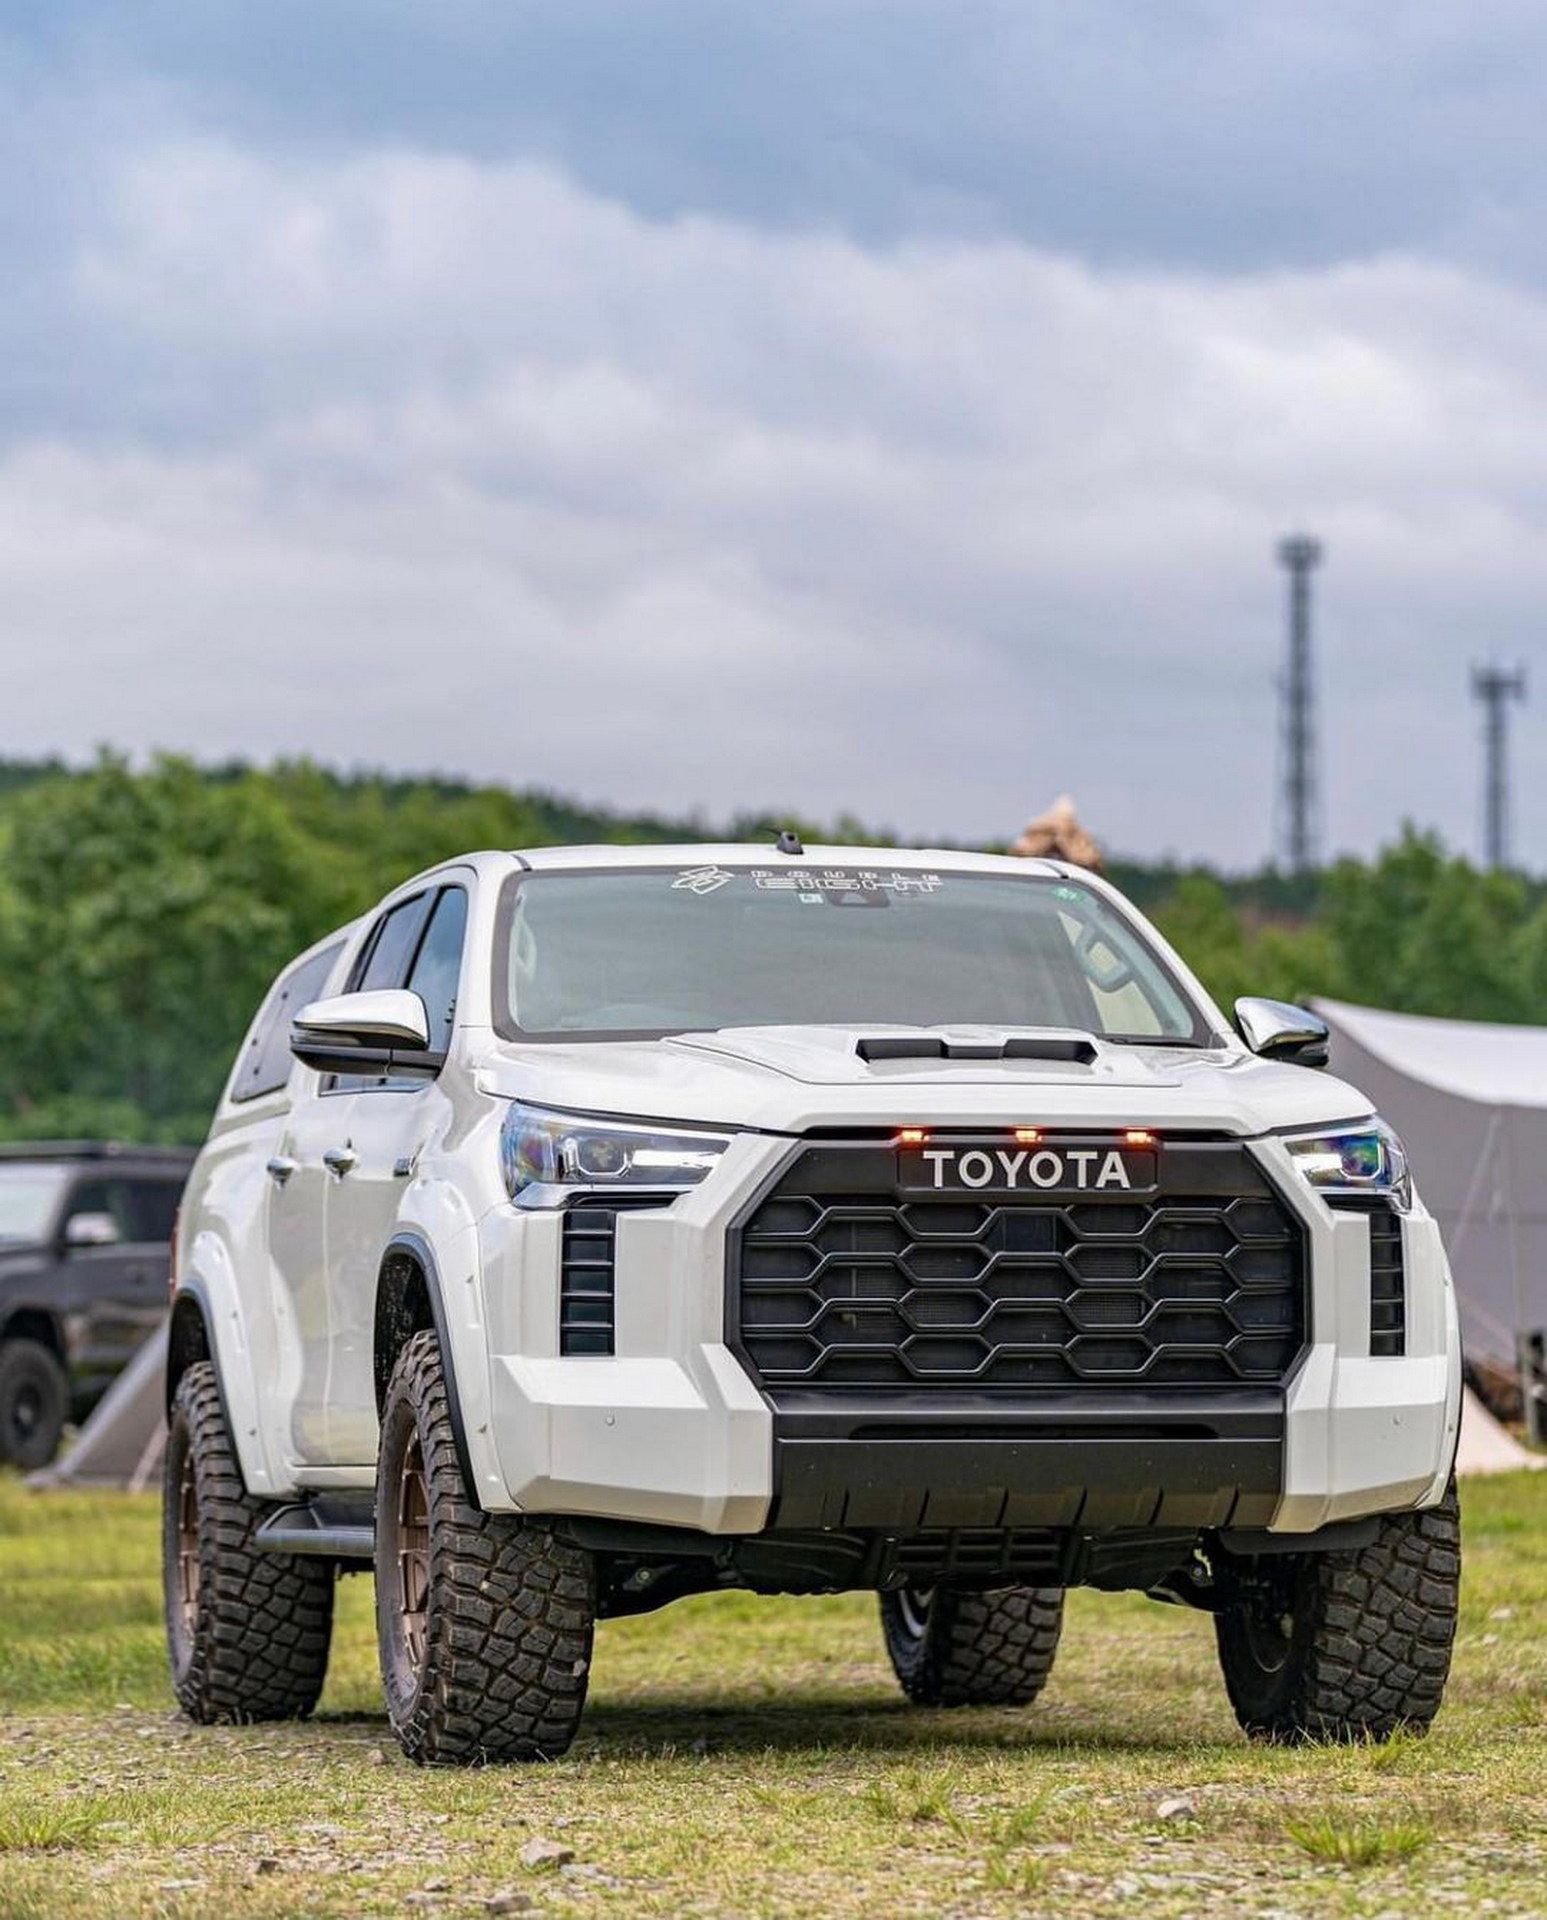 Toyota Hilux ‘lột xác’ theo phong cách Tundra cực ấn tượng gmg-88-toyota-hilux-with-tundra-face-14.jpg